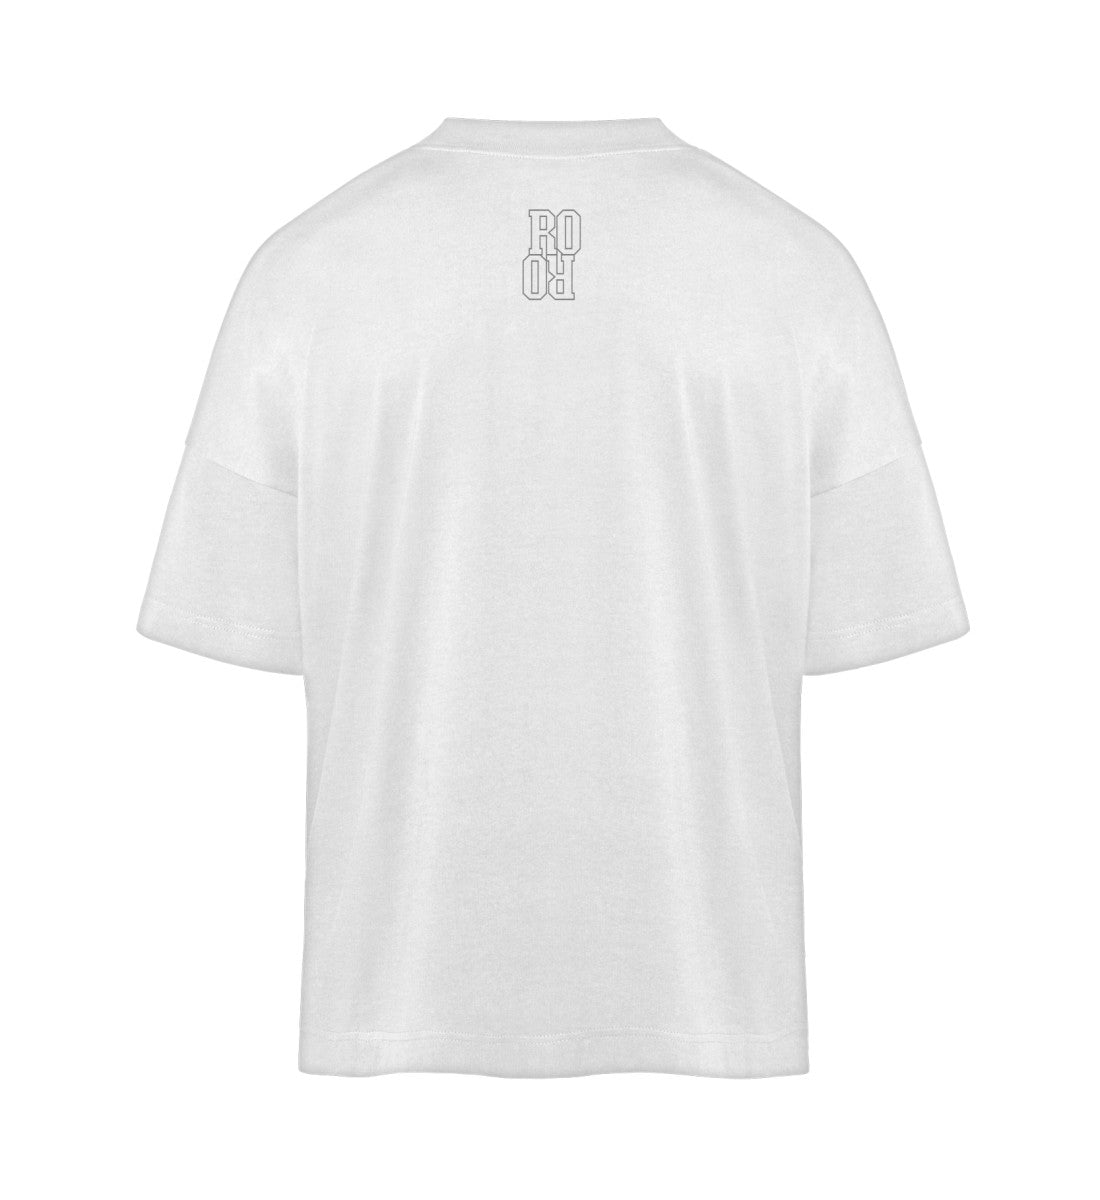 Weißes T-Shirt Unisex Oversize Fit für Frauen und Männer bedruckt mit dem Design der Roger Rockawoo Kollektion Minimalism